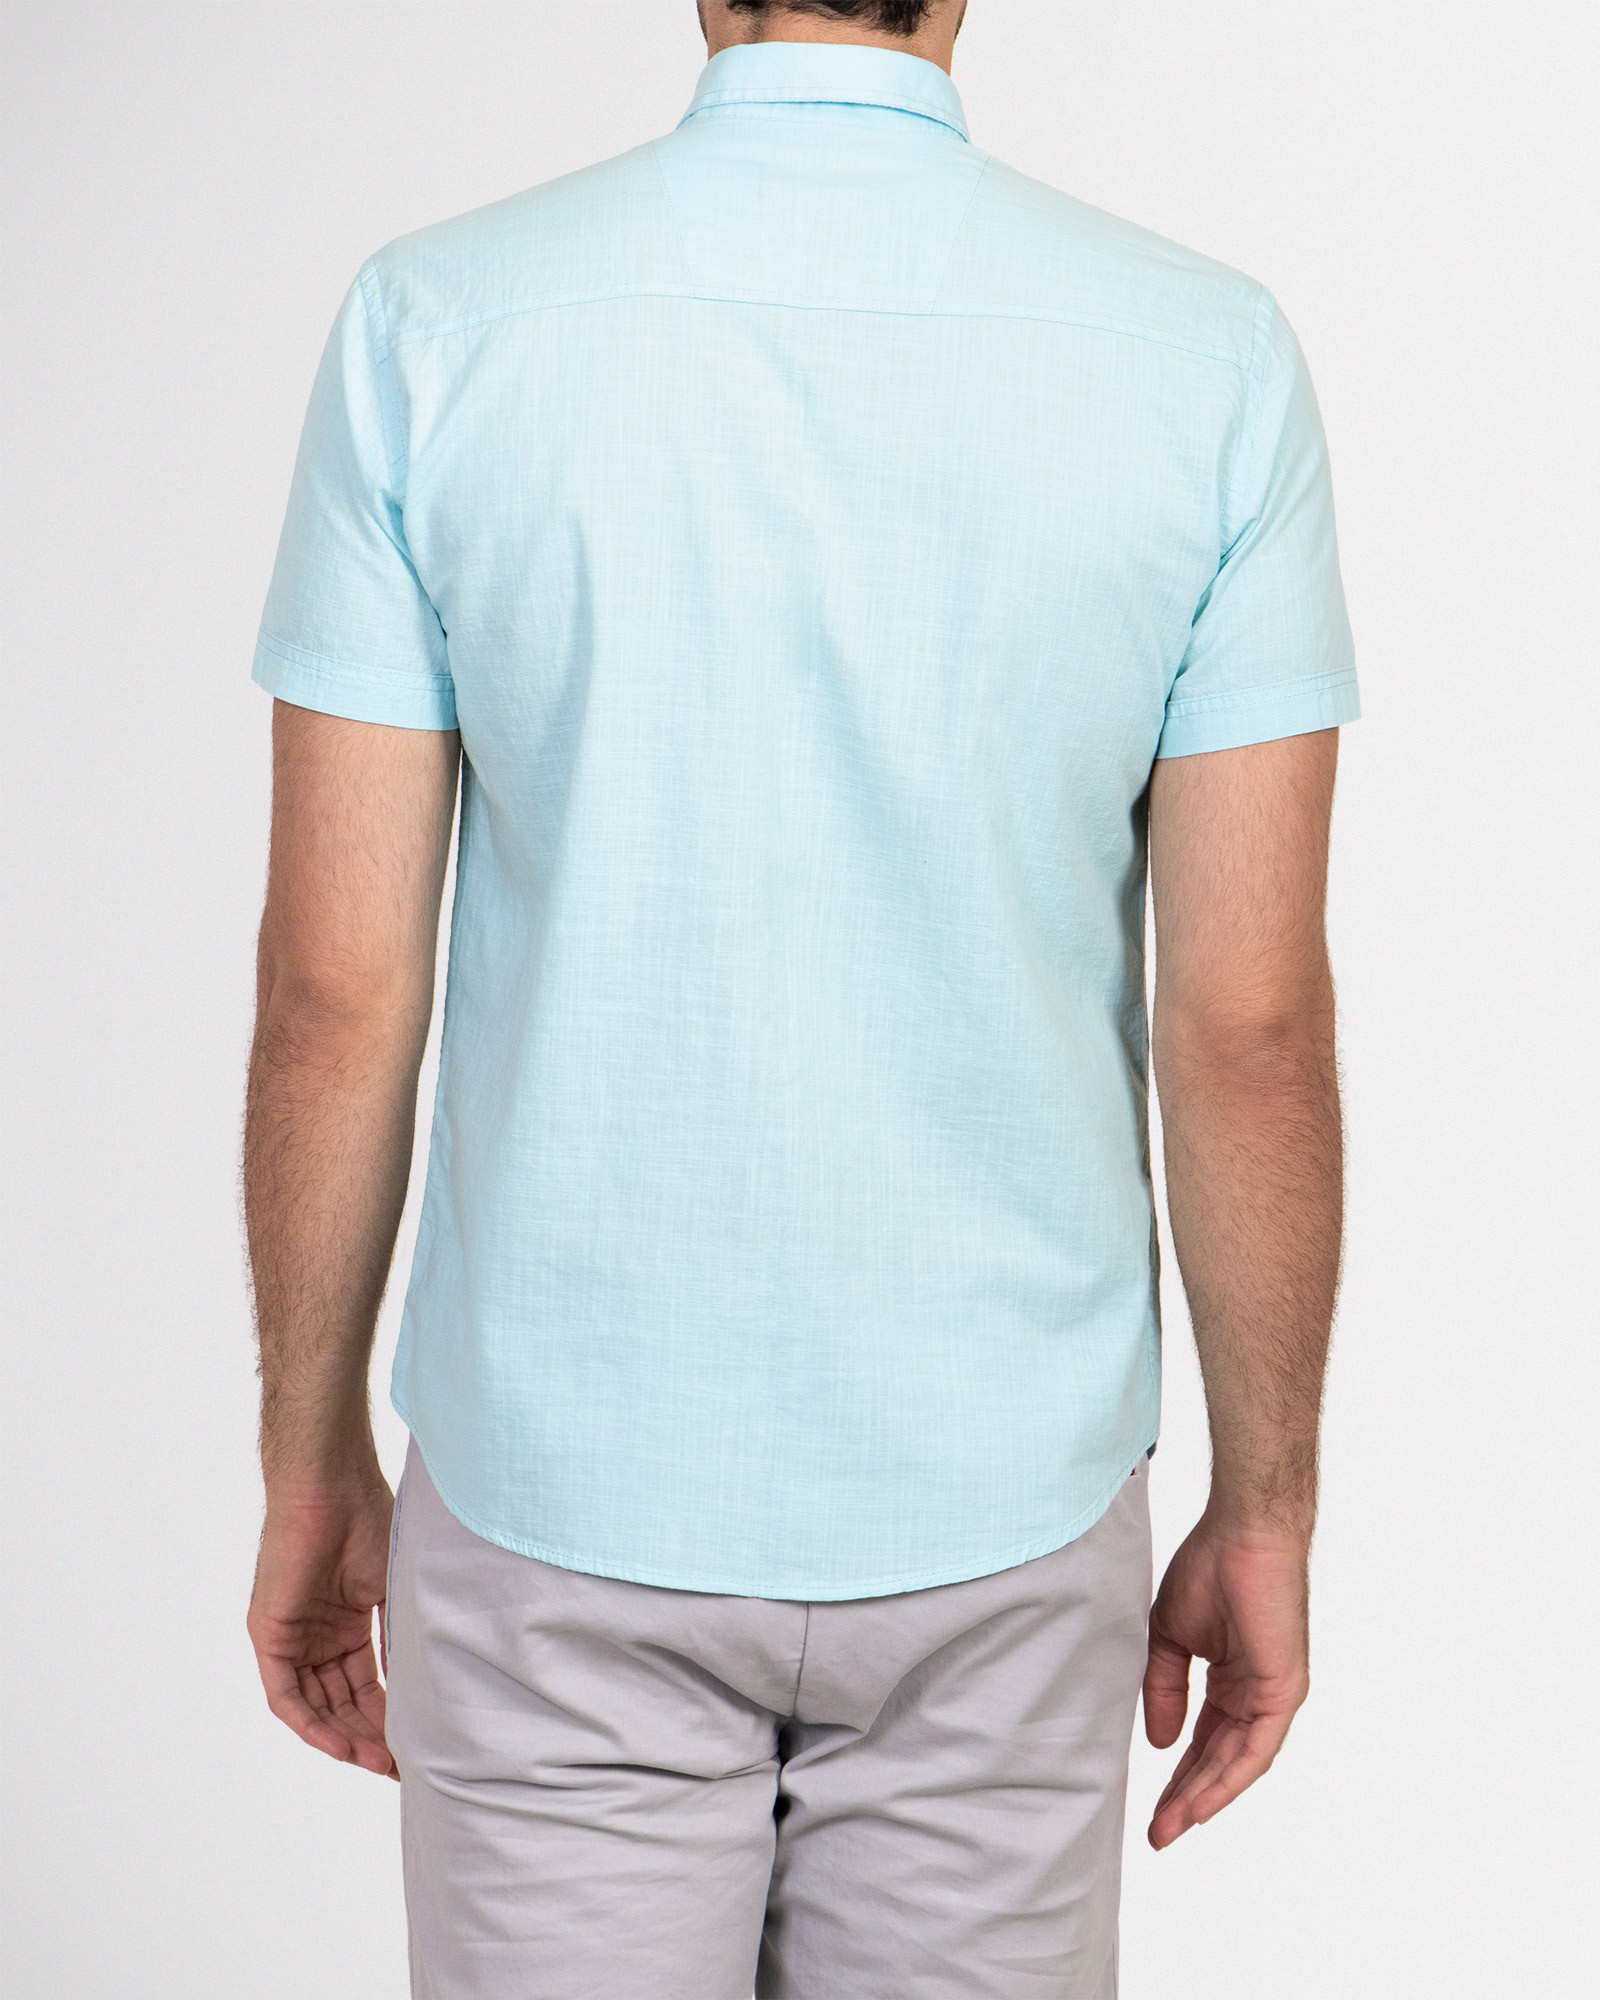 خرید پیراهن ساده مردانه آبی روشن 19222110